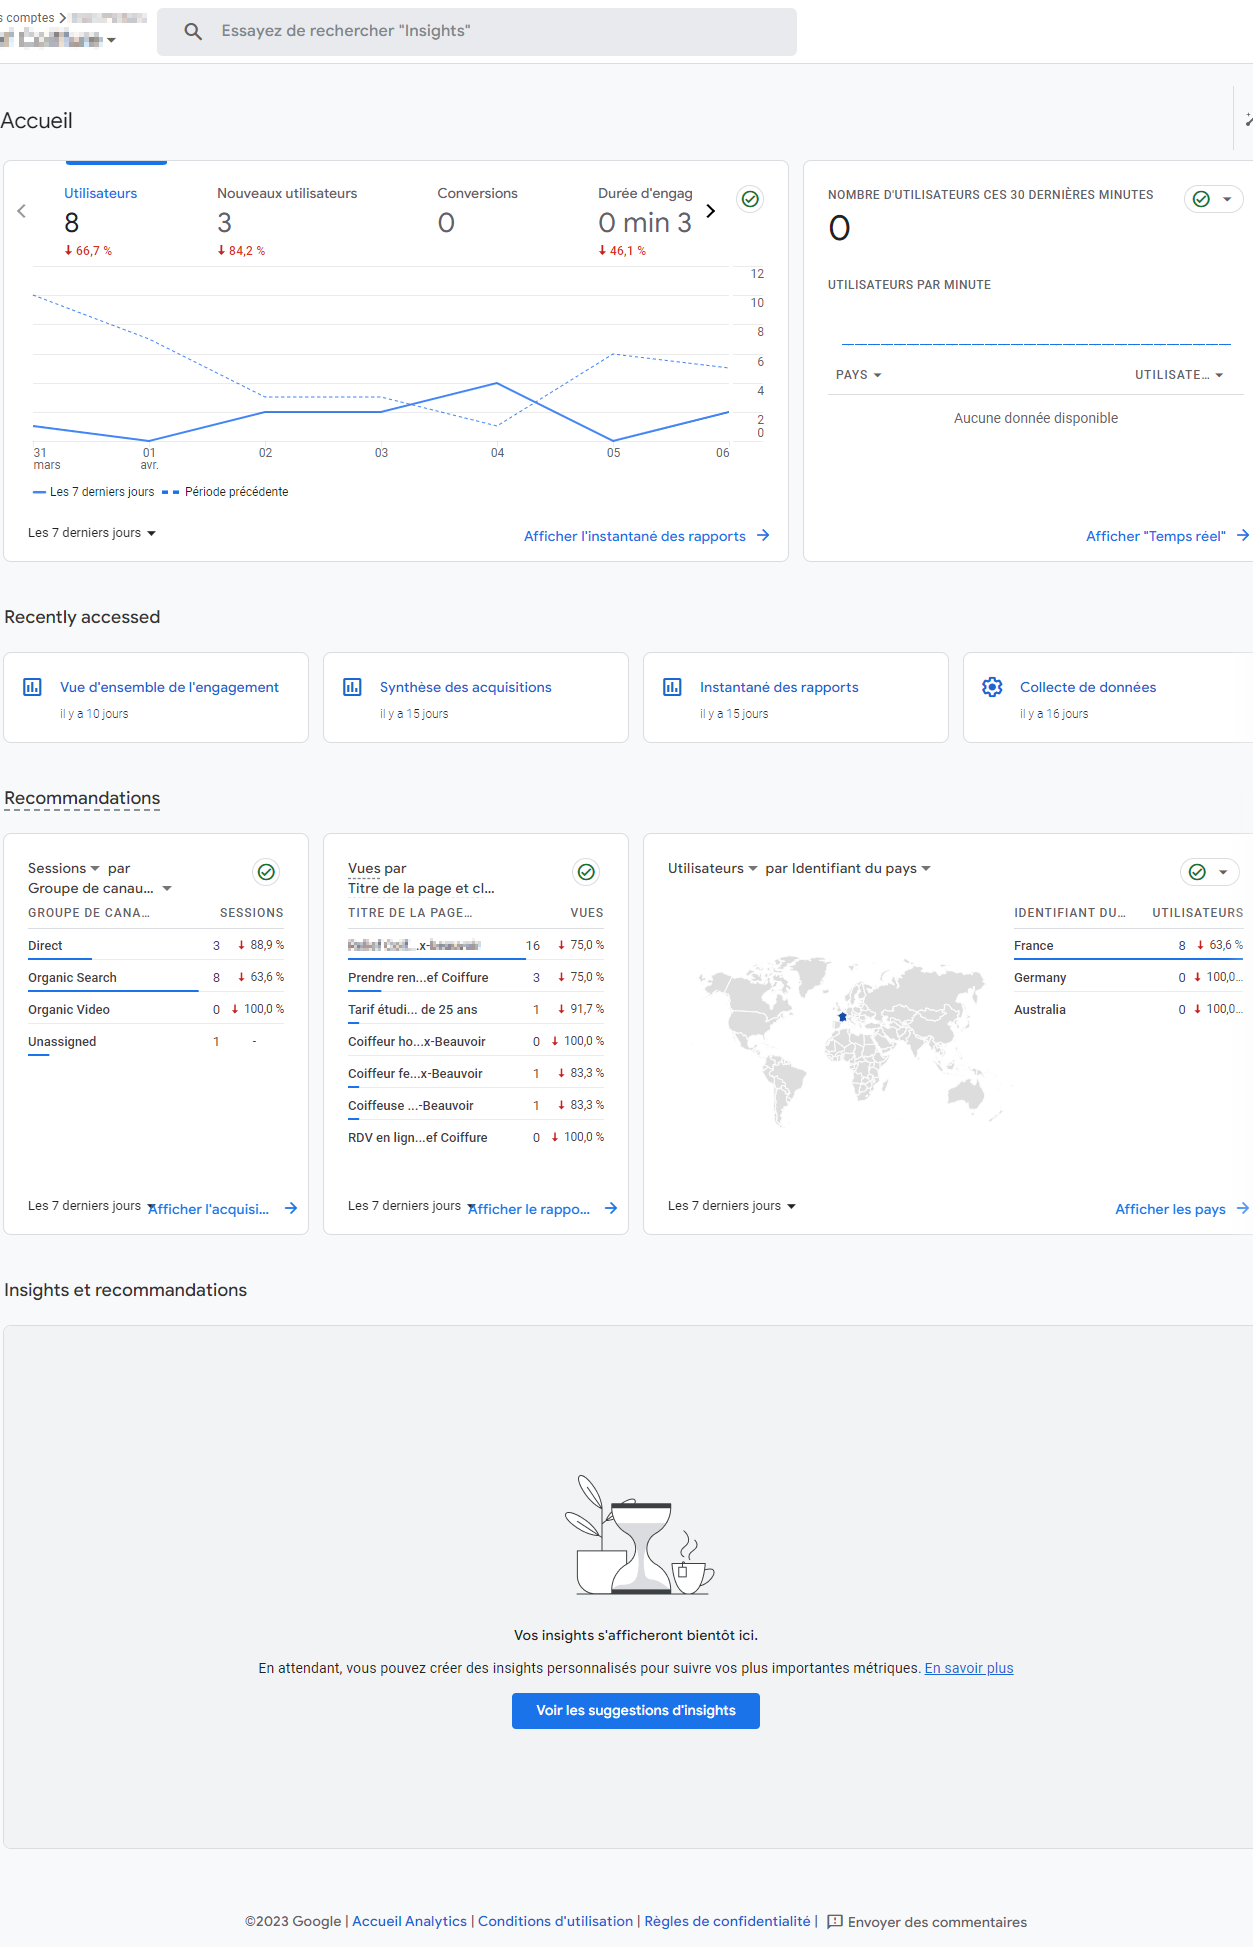 Google Ads et Analytics, son outil de reporting et d'optimisation de campagne publicitaire